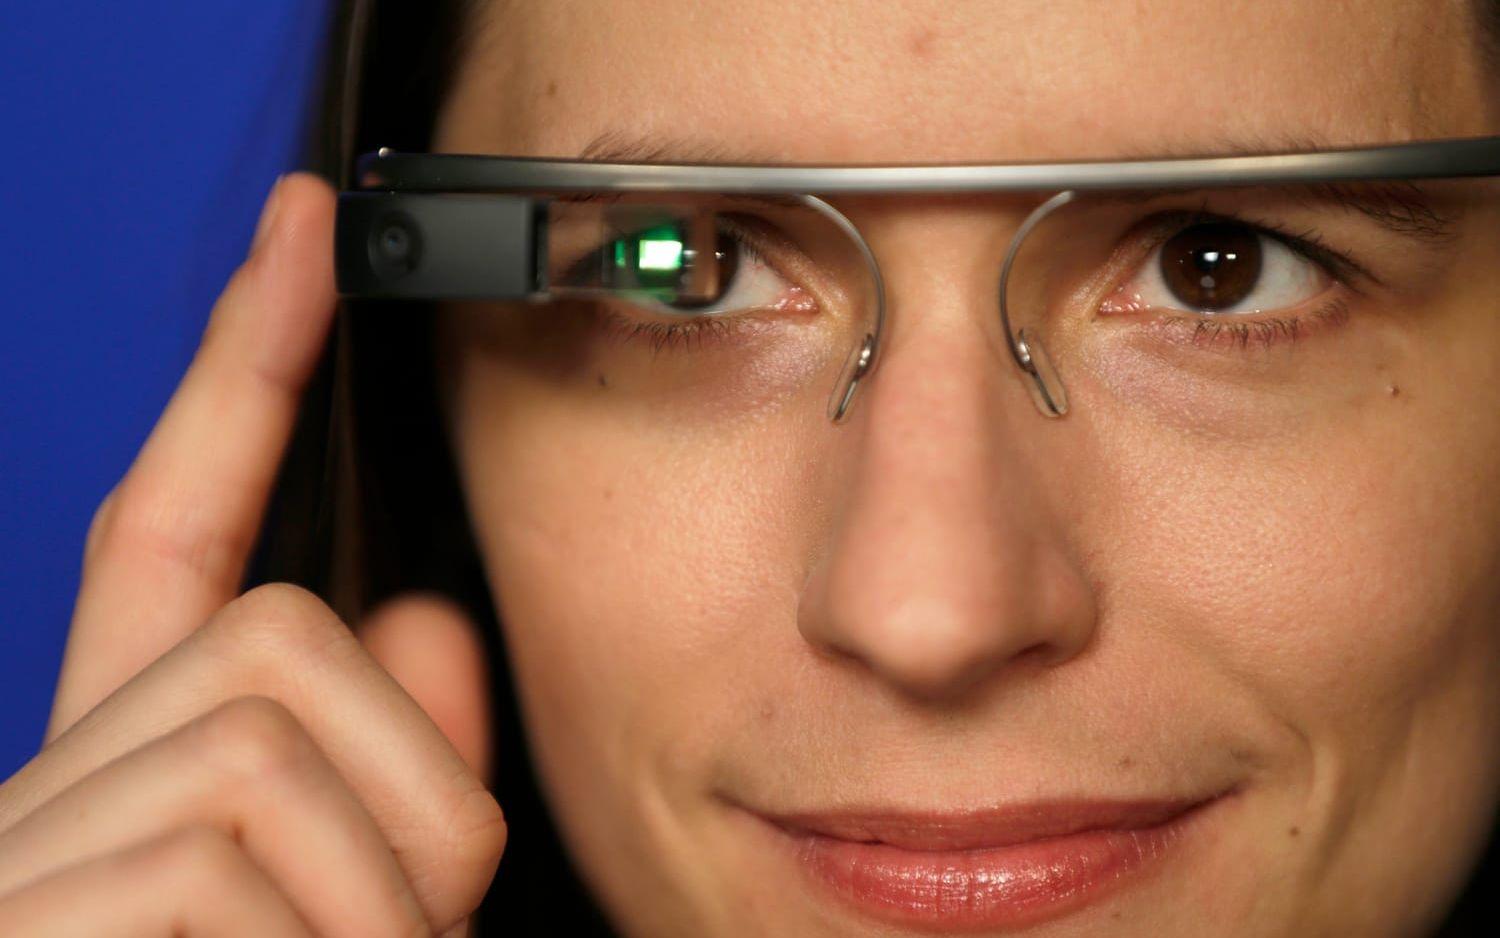 Google Glass lanserades till en begränsad testgrupp 2013 och till allmänheten året därpå. Med glasögonen på kunde användaren använda röstkommendon för att bland annat filma och få upp inforrmation. Google drog tillbaka produkten förra året men sa att de fortsatte utveckligen intern.